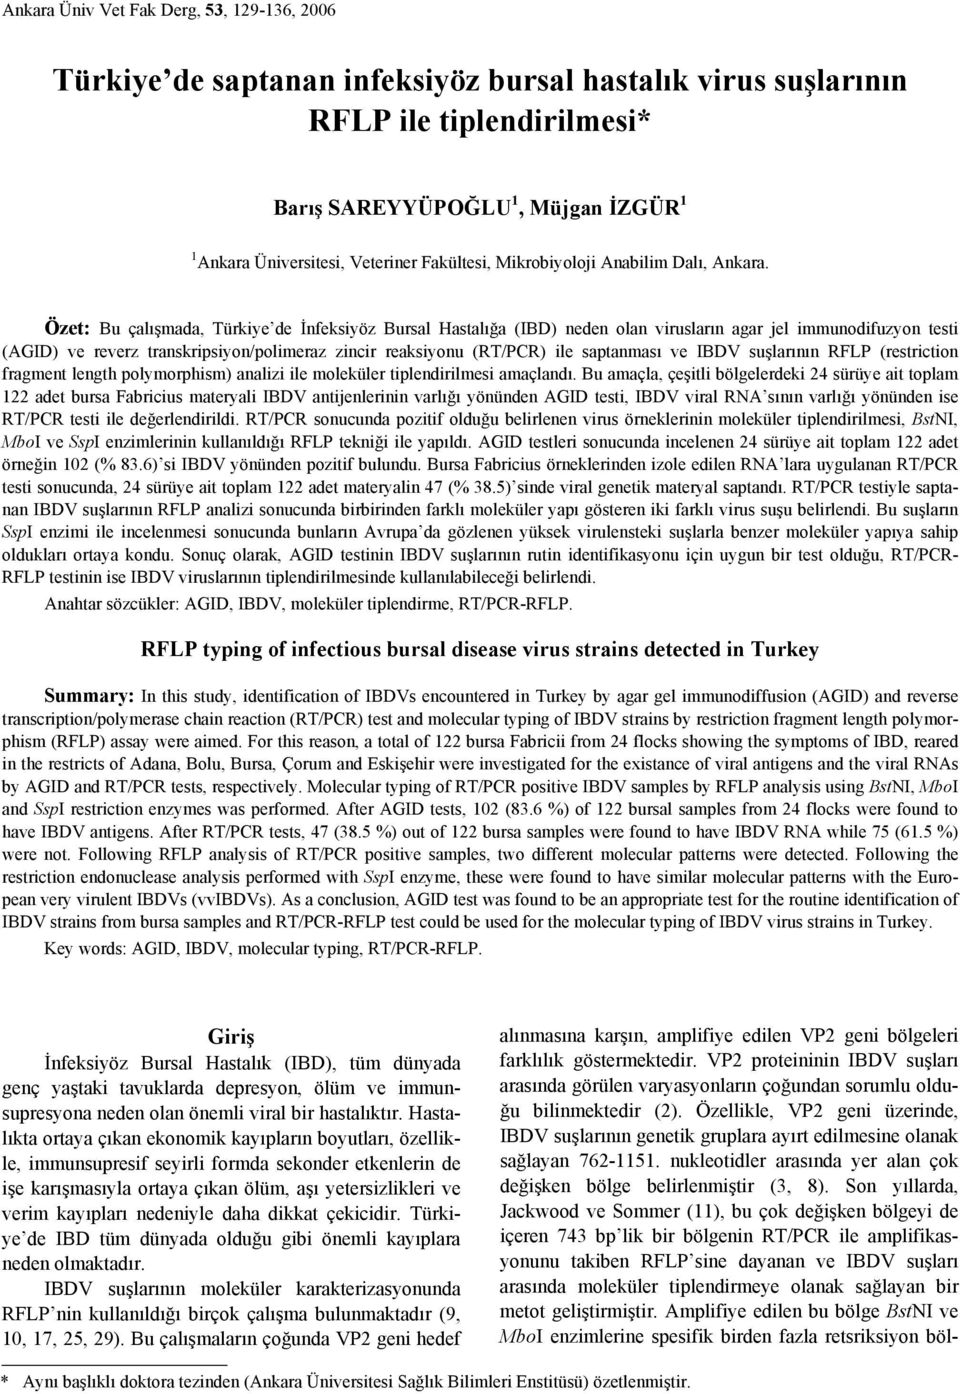 Özet: Bu çalışmada, Türkiye de İnfeksiyöz Bursal Hastalığa (IBD) neden olan virusların agar jel immunodifuzyon testi (AGID) ve reverz transkripsiyon/polimeraz zincir reaksiyonu (RT/PCR) ile